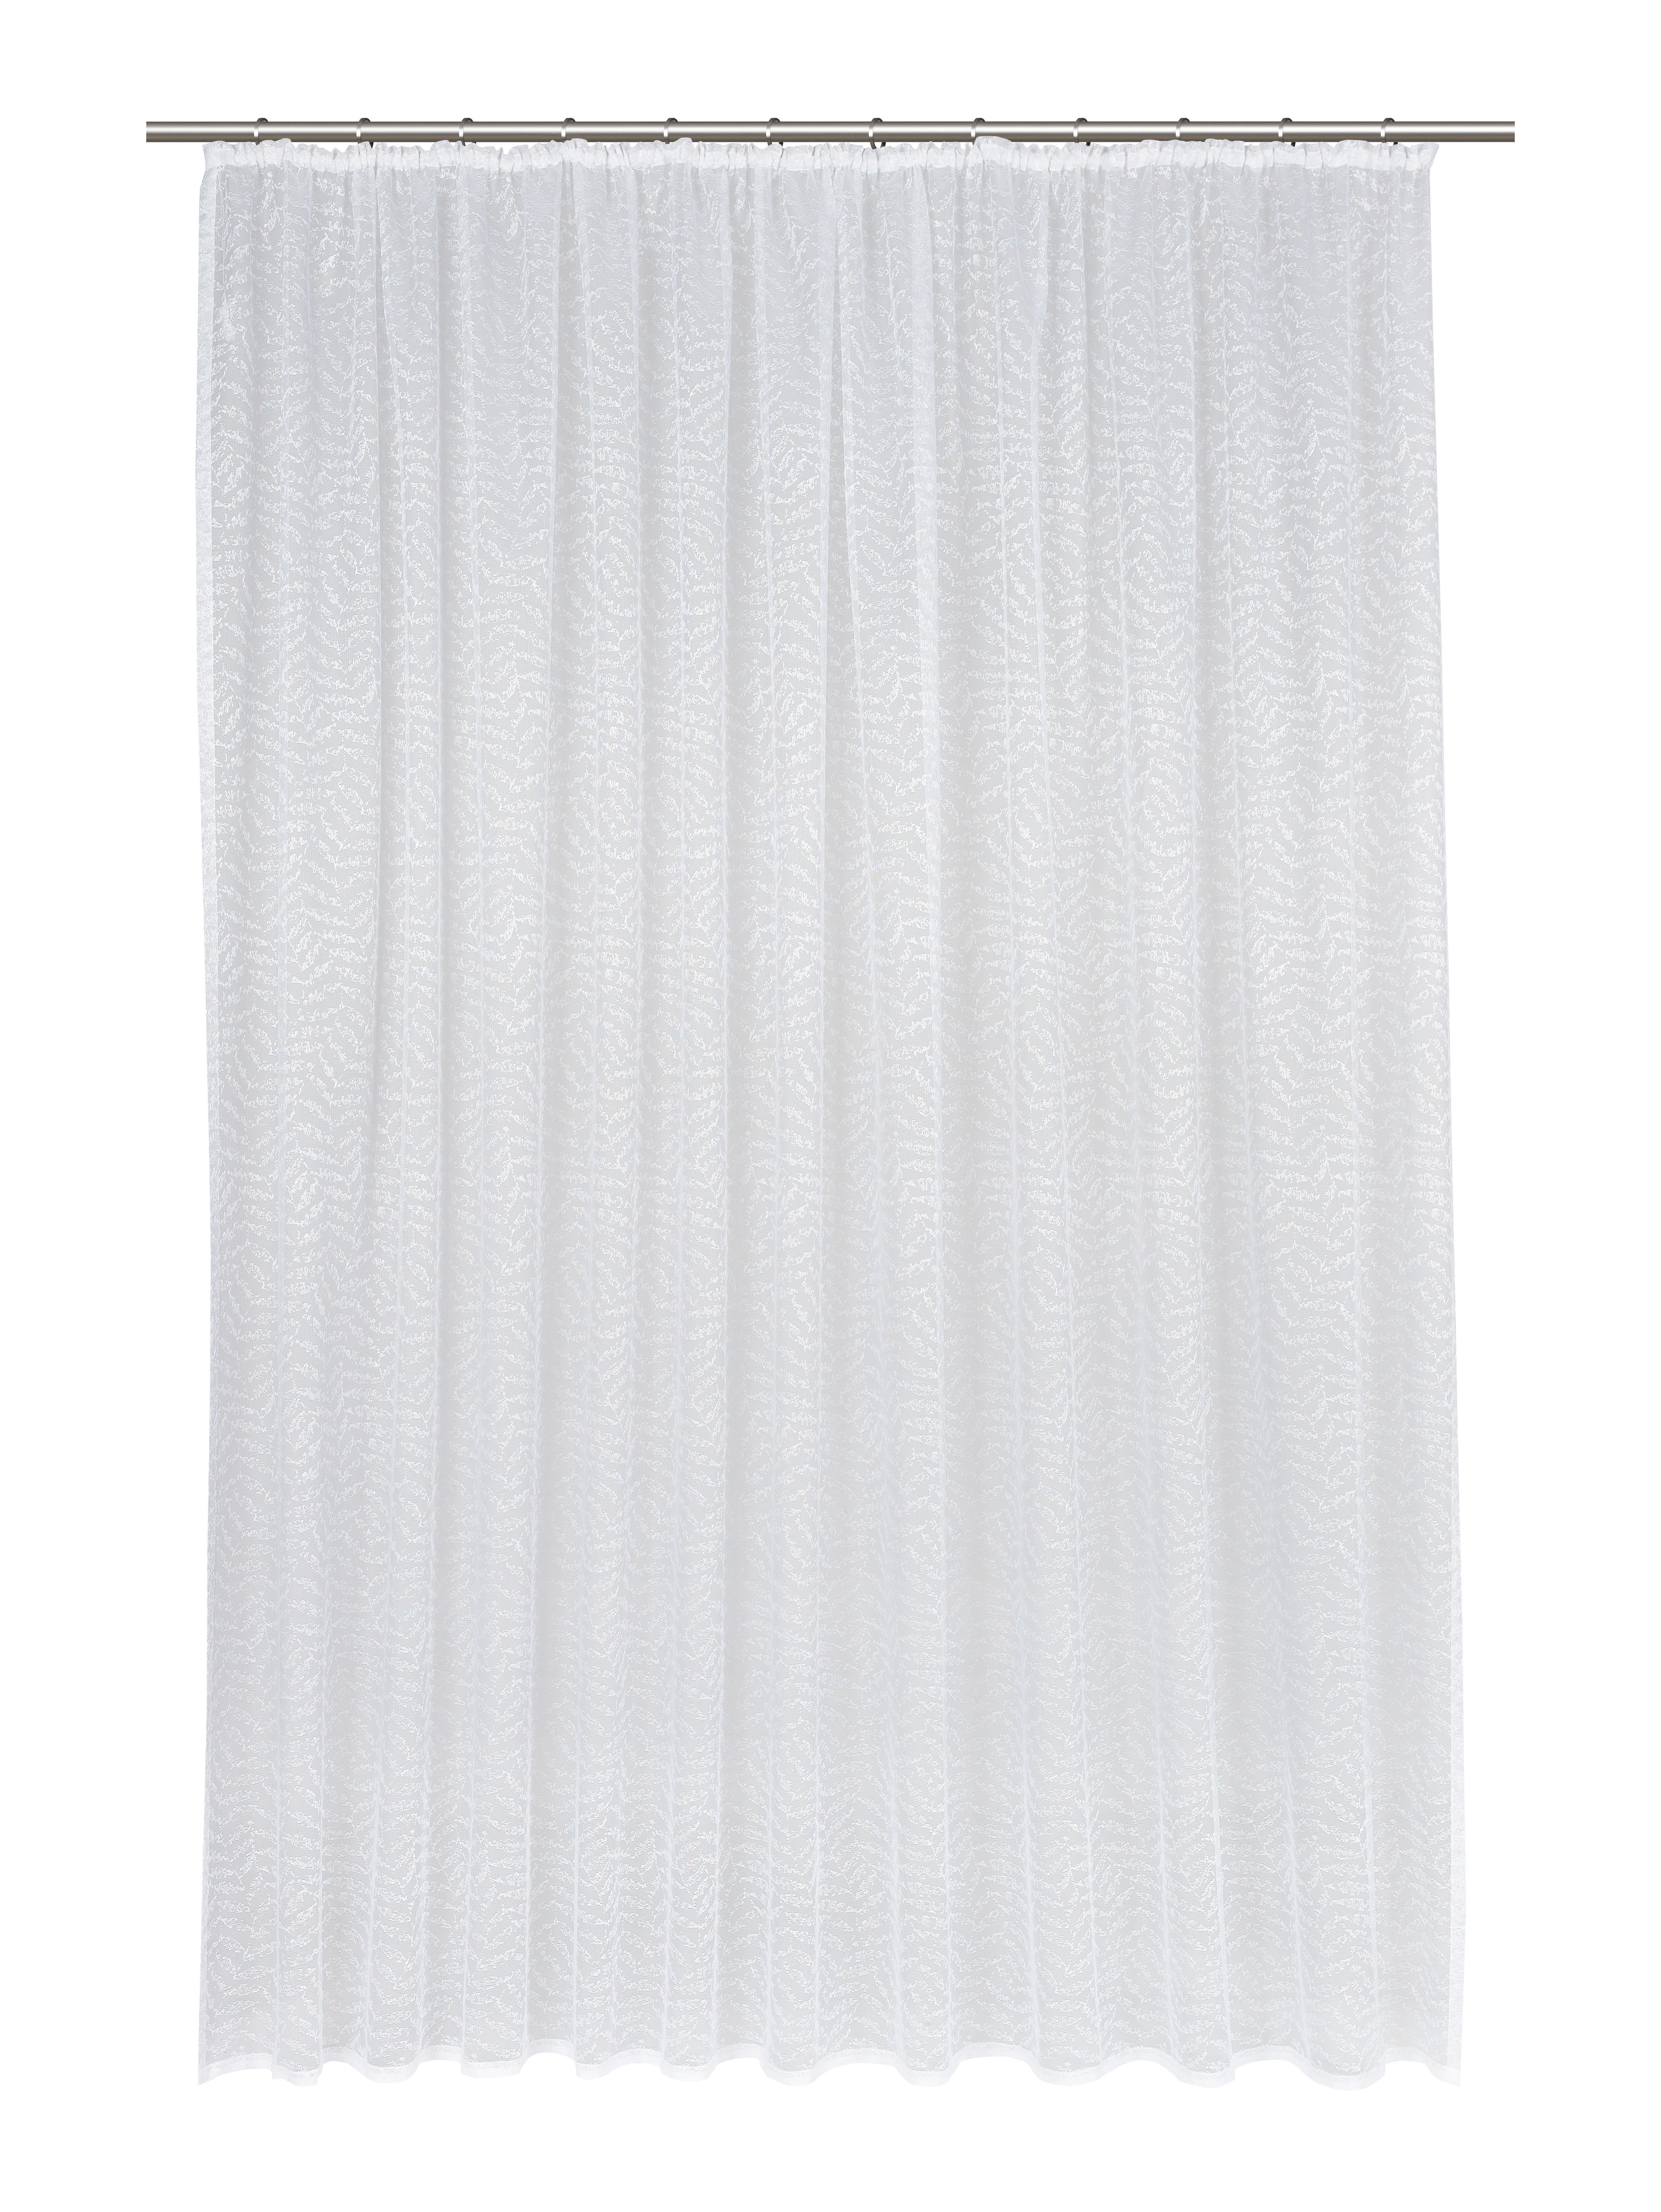 Készfüggöny Rita Store 300/245cm - Fehér, konvencionális, Textil (300/245cm) - Modern Living